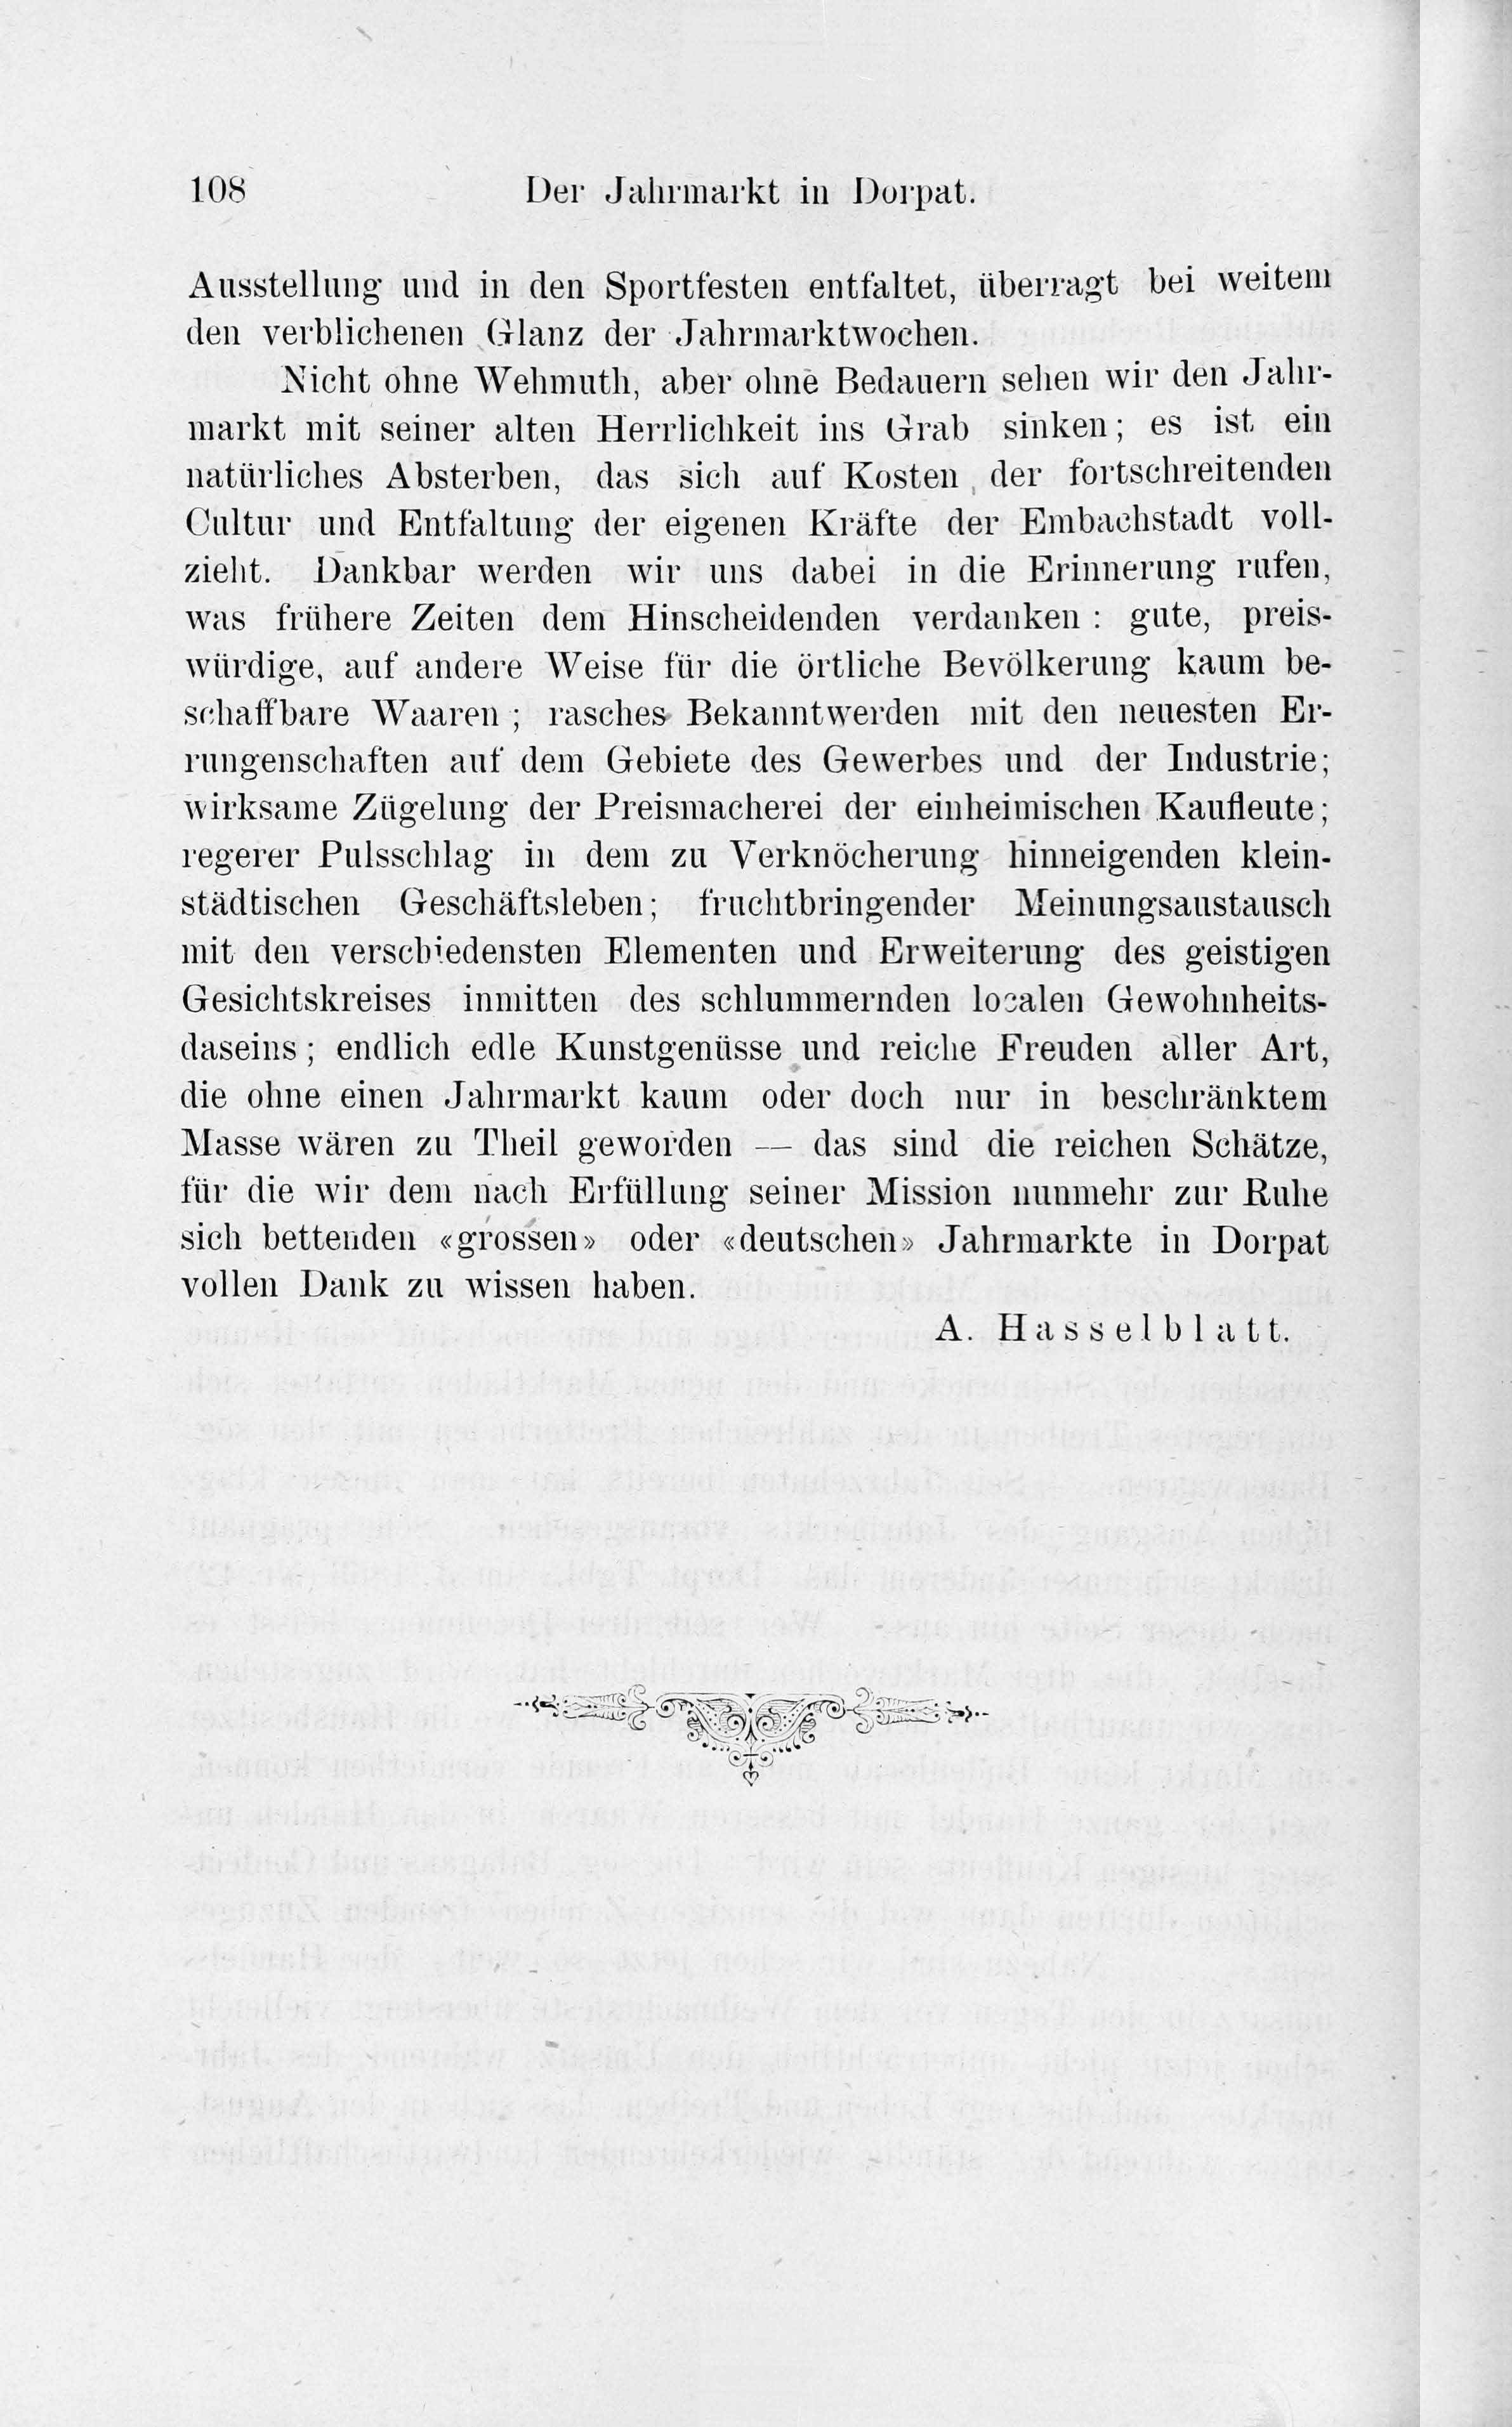 Der Jahrmarkt in Dorpat (1884) | 48. Main body of text